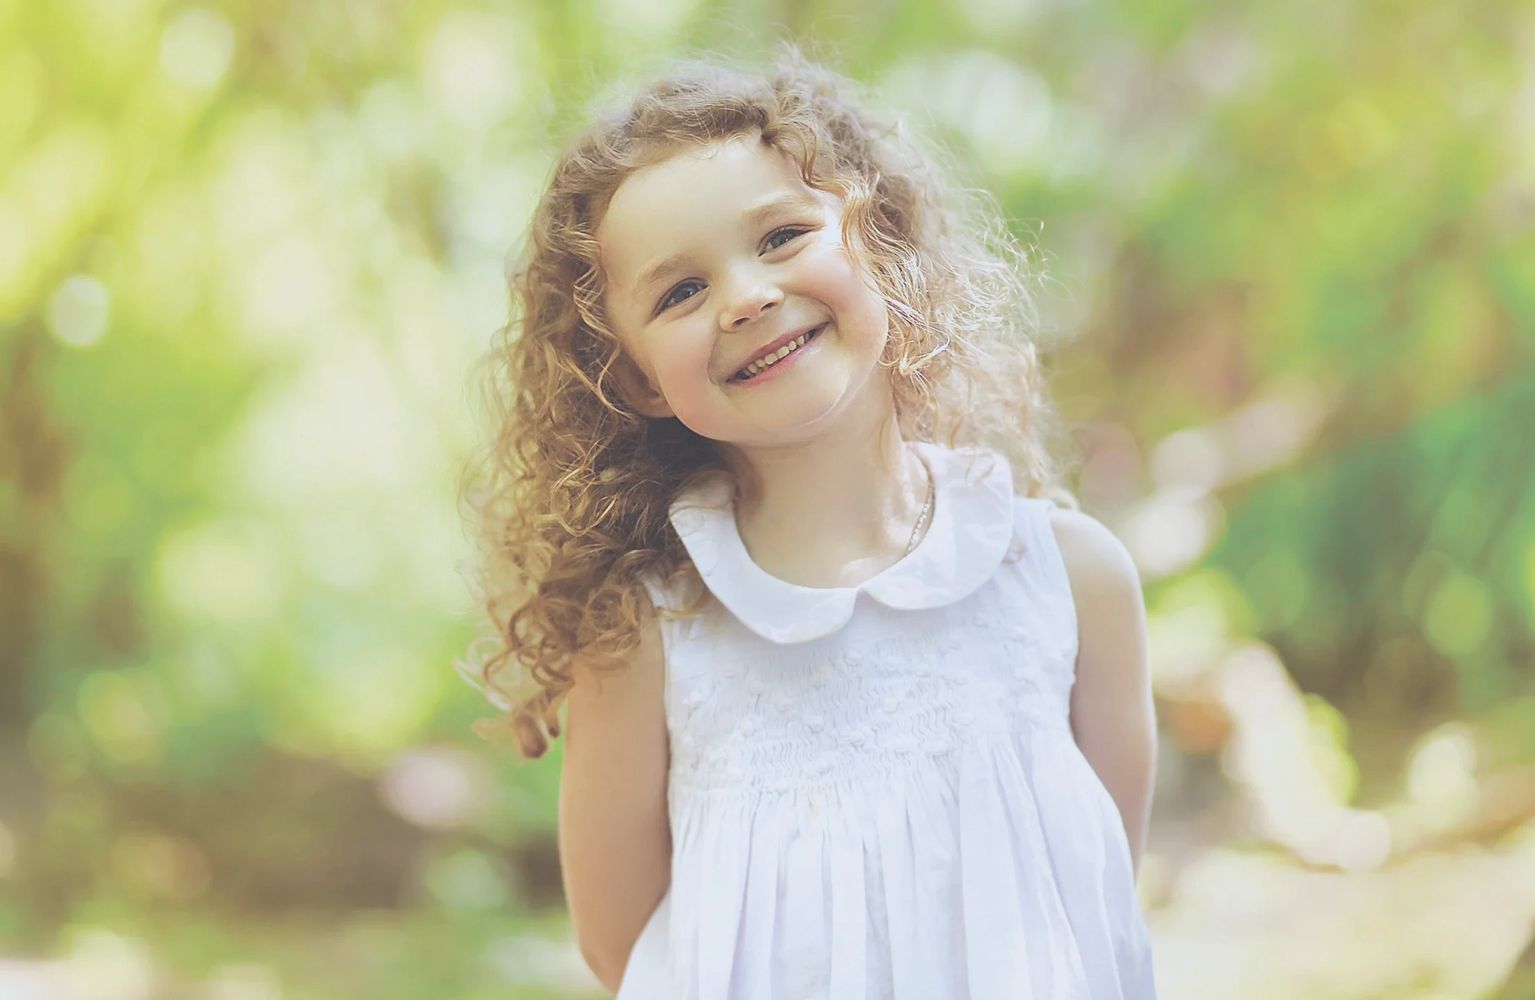 Une jeune fille avec une robe blanche et les cheveux frisés sourit dans la forêt.